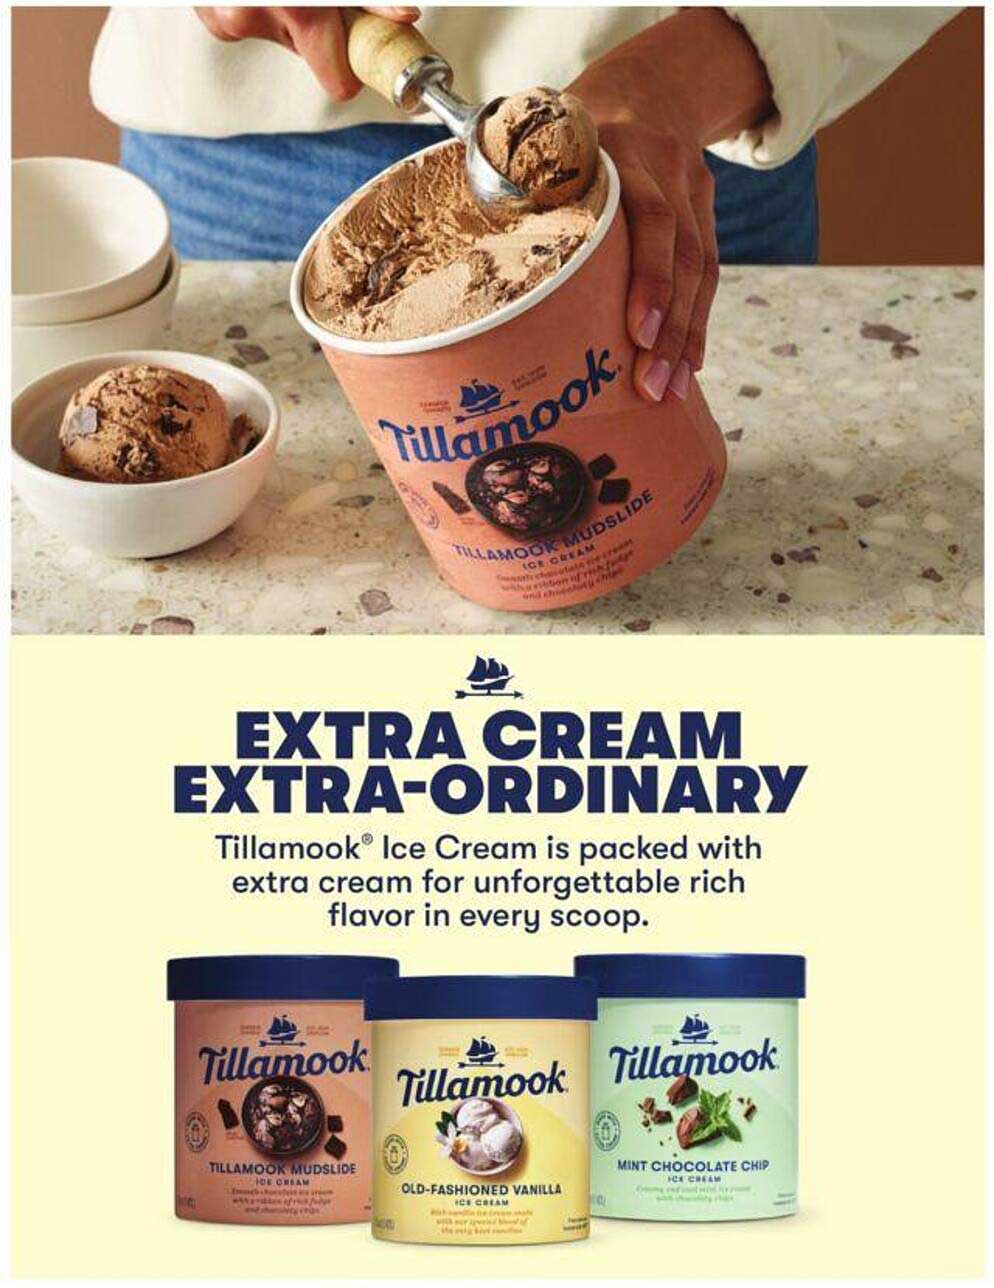 Albertsons Tillamook Ice Cream